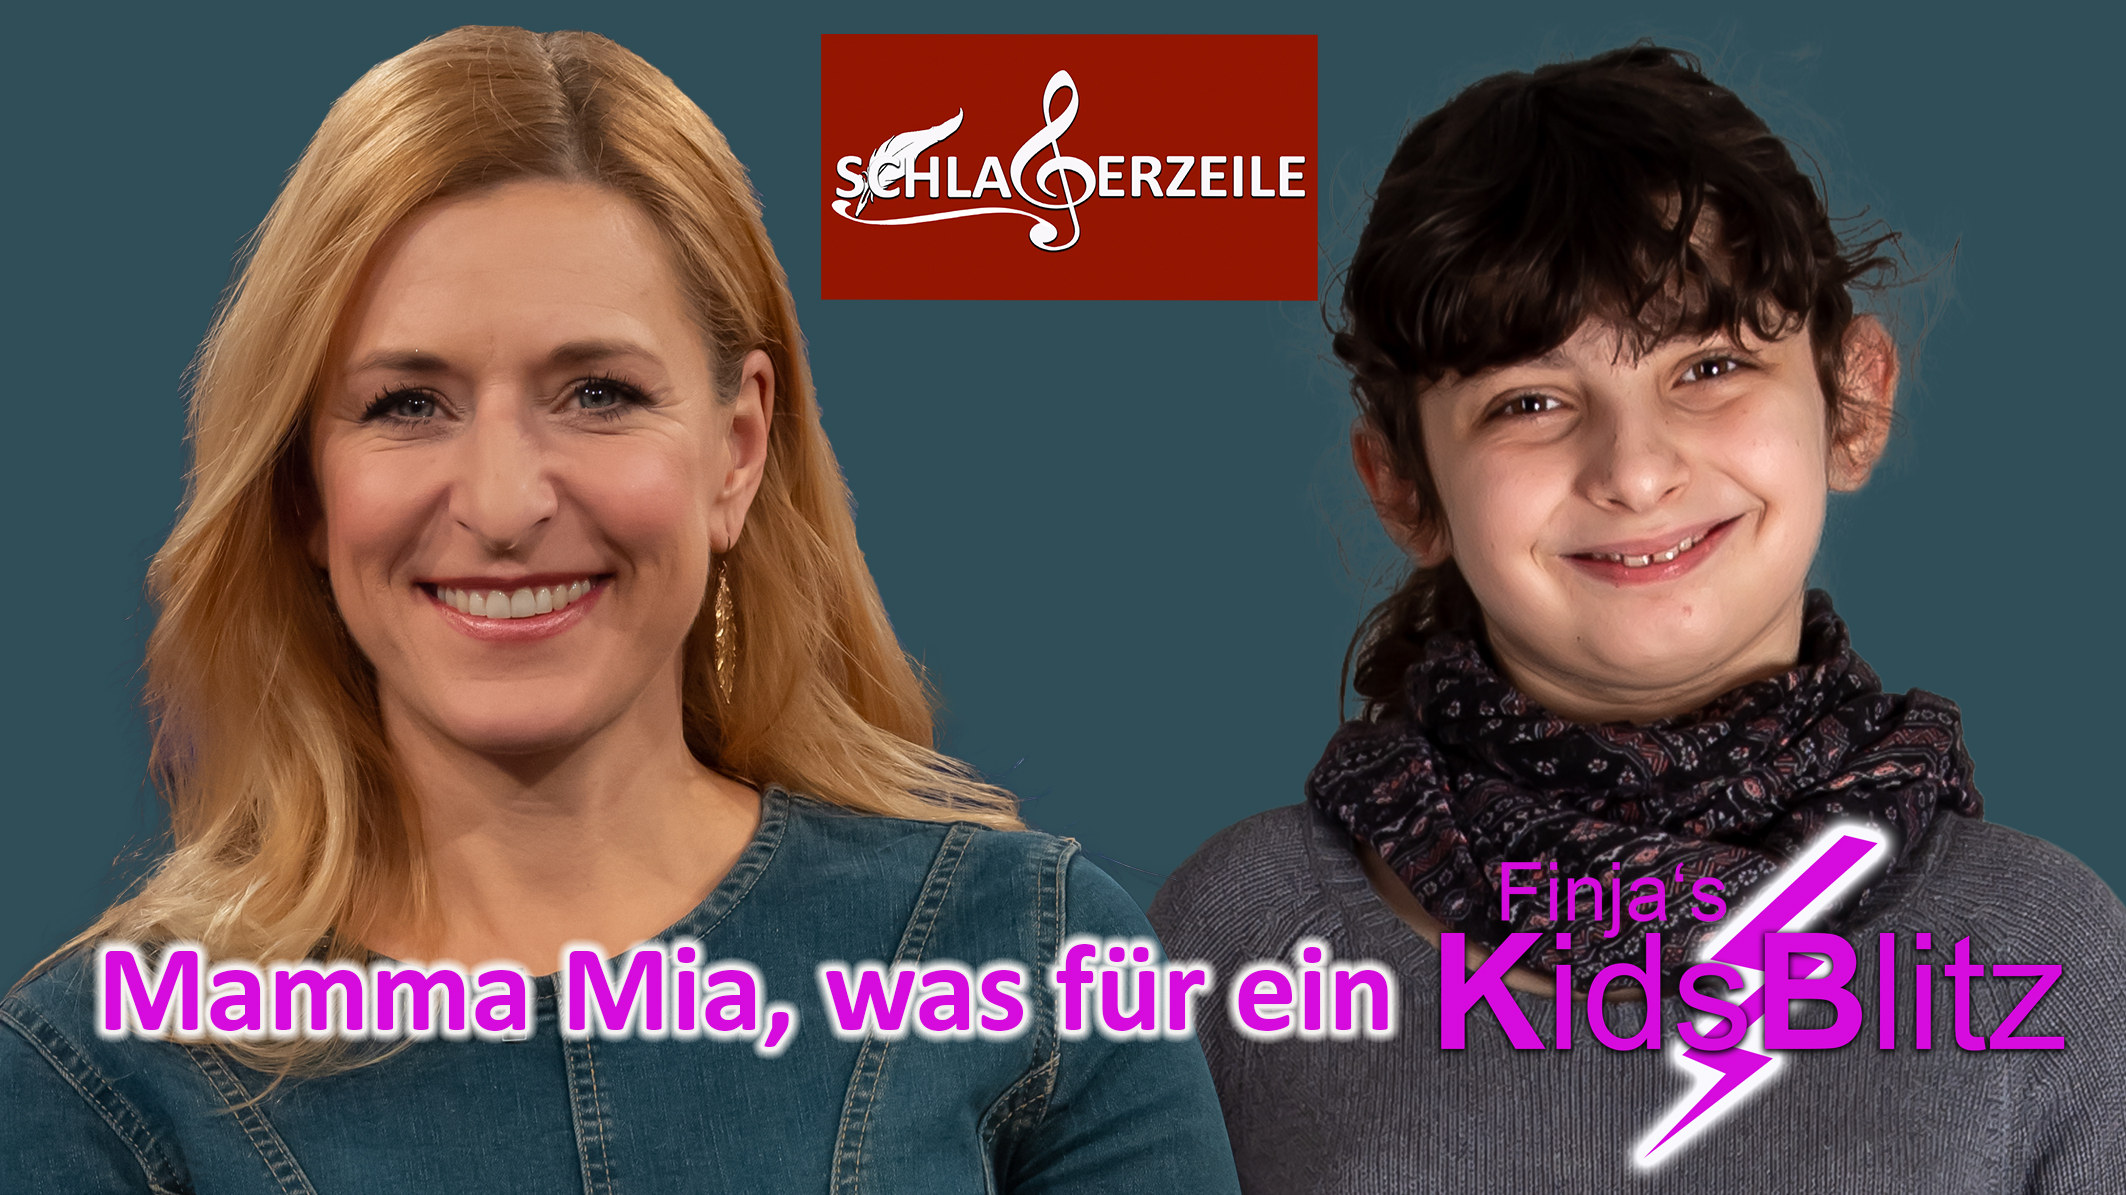 Stefanie Hertel KidsBlitz